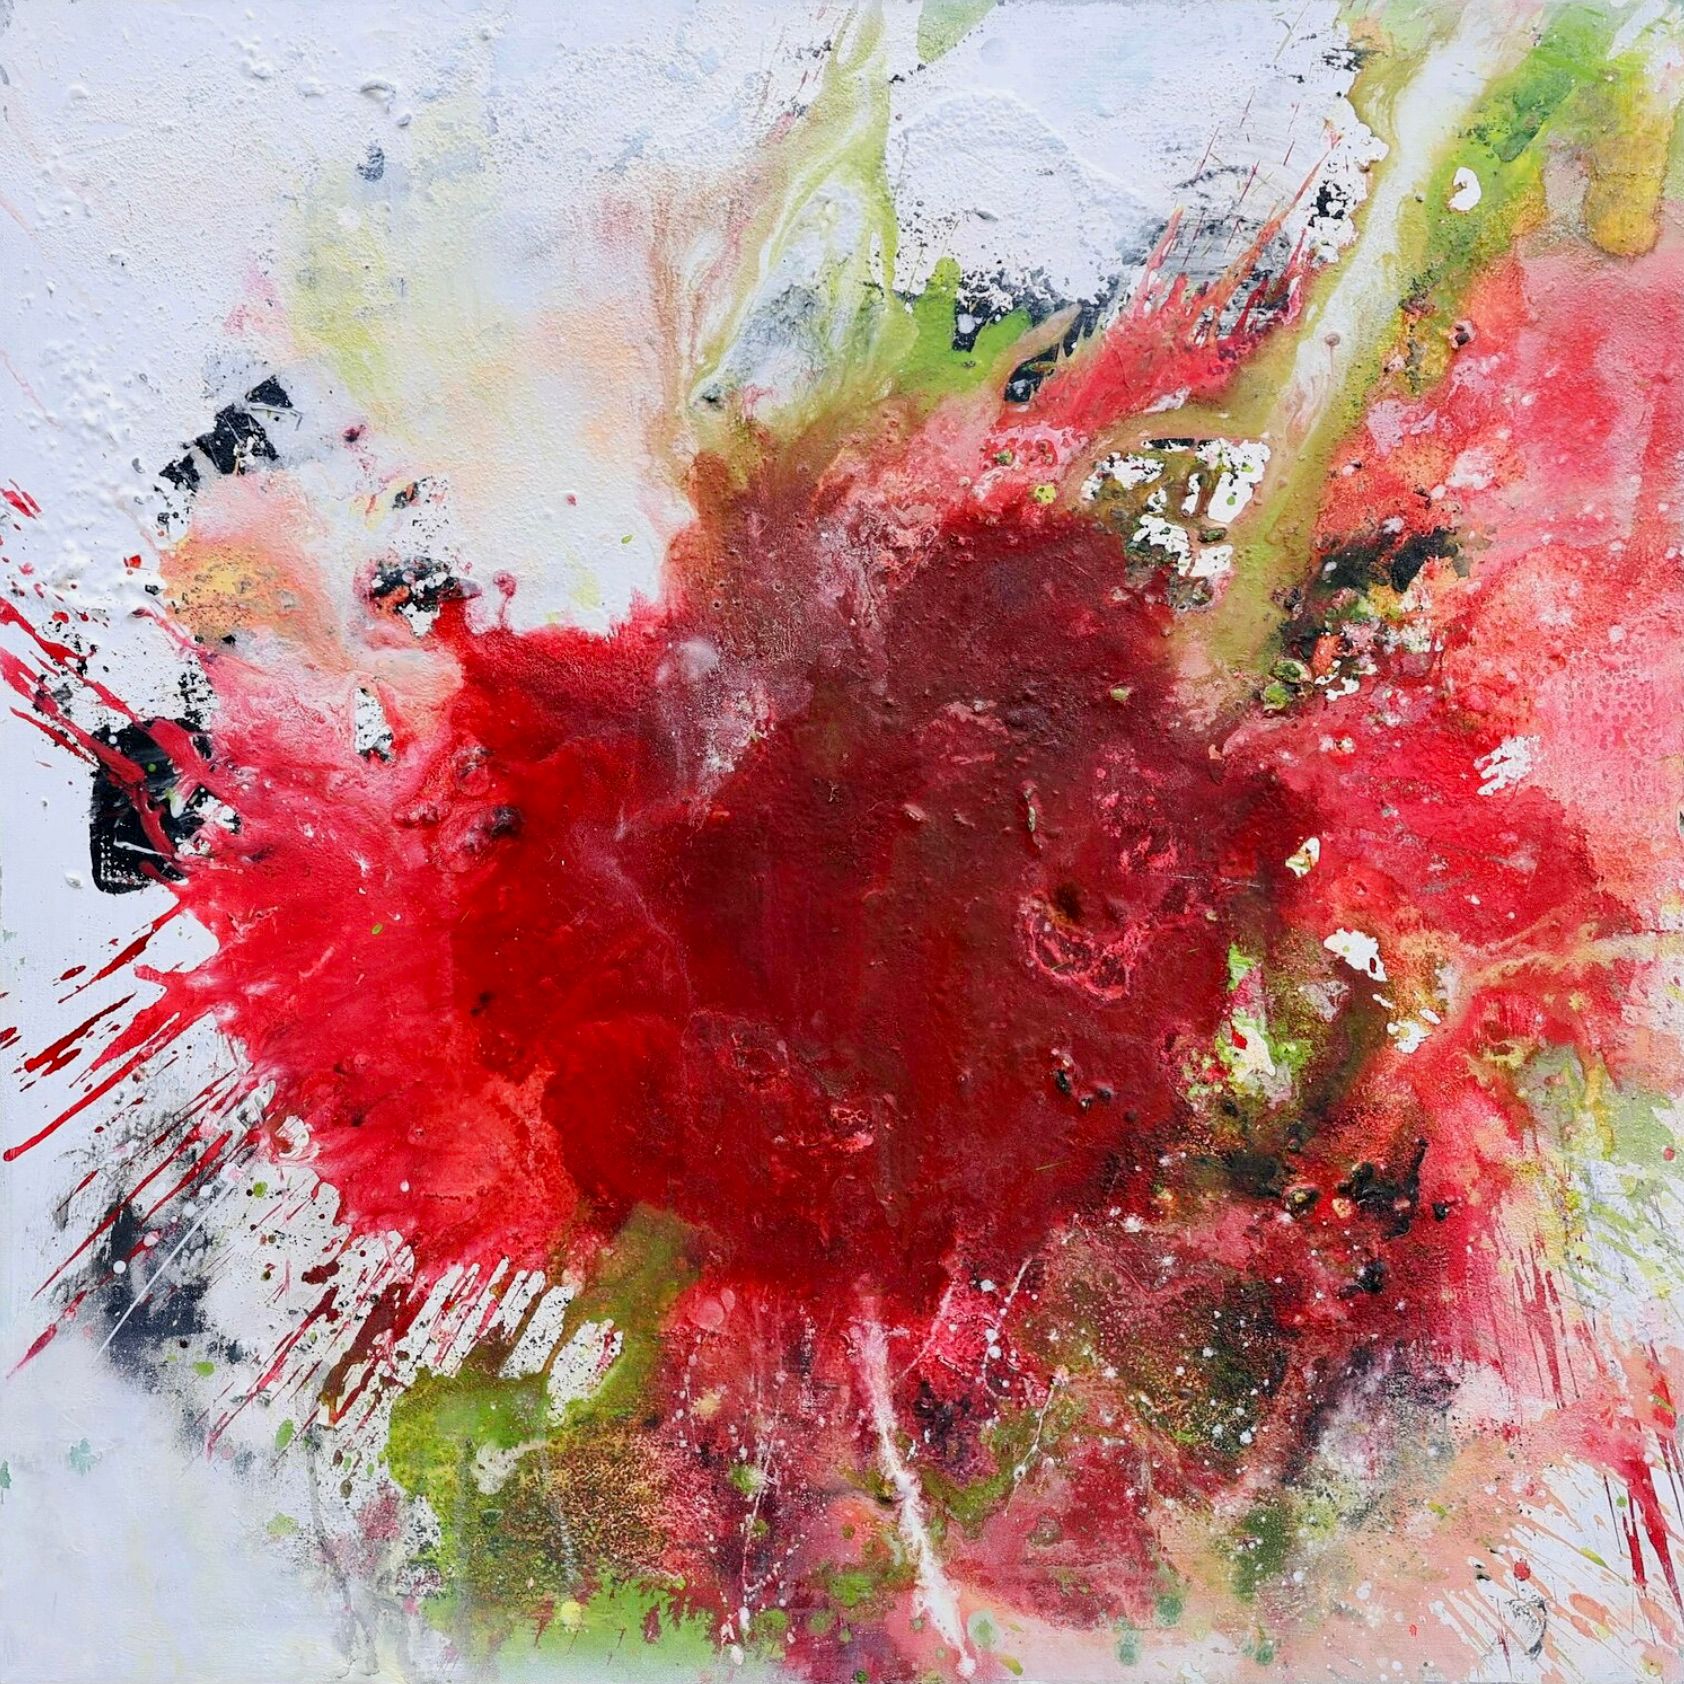 在克里斯塔-哈克的 "春之花 "表现主义、抽象、色彩丰富的画作中，红色、粉色和绿色占主导地位。